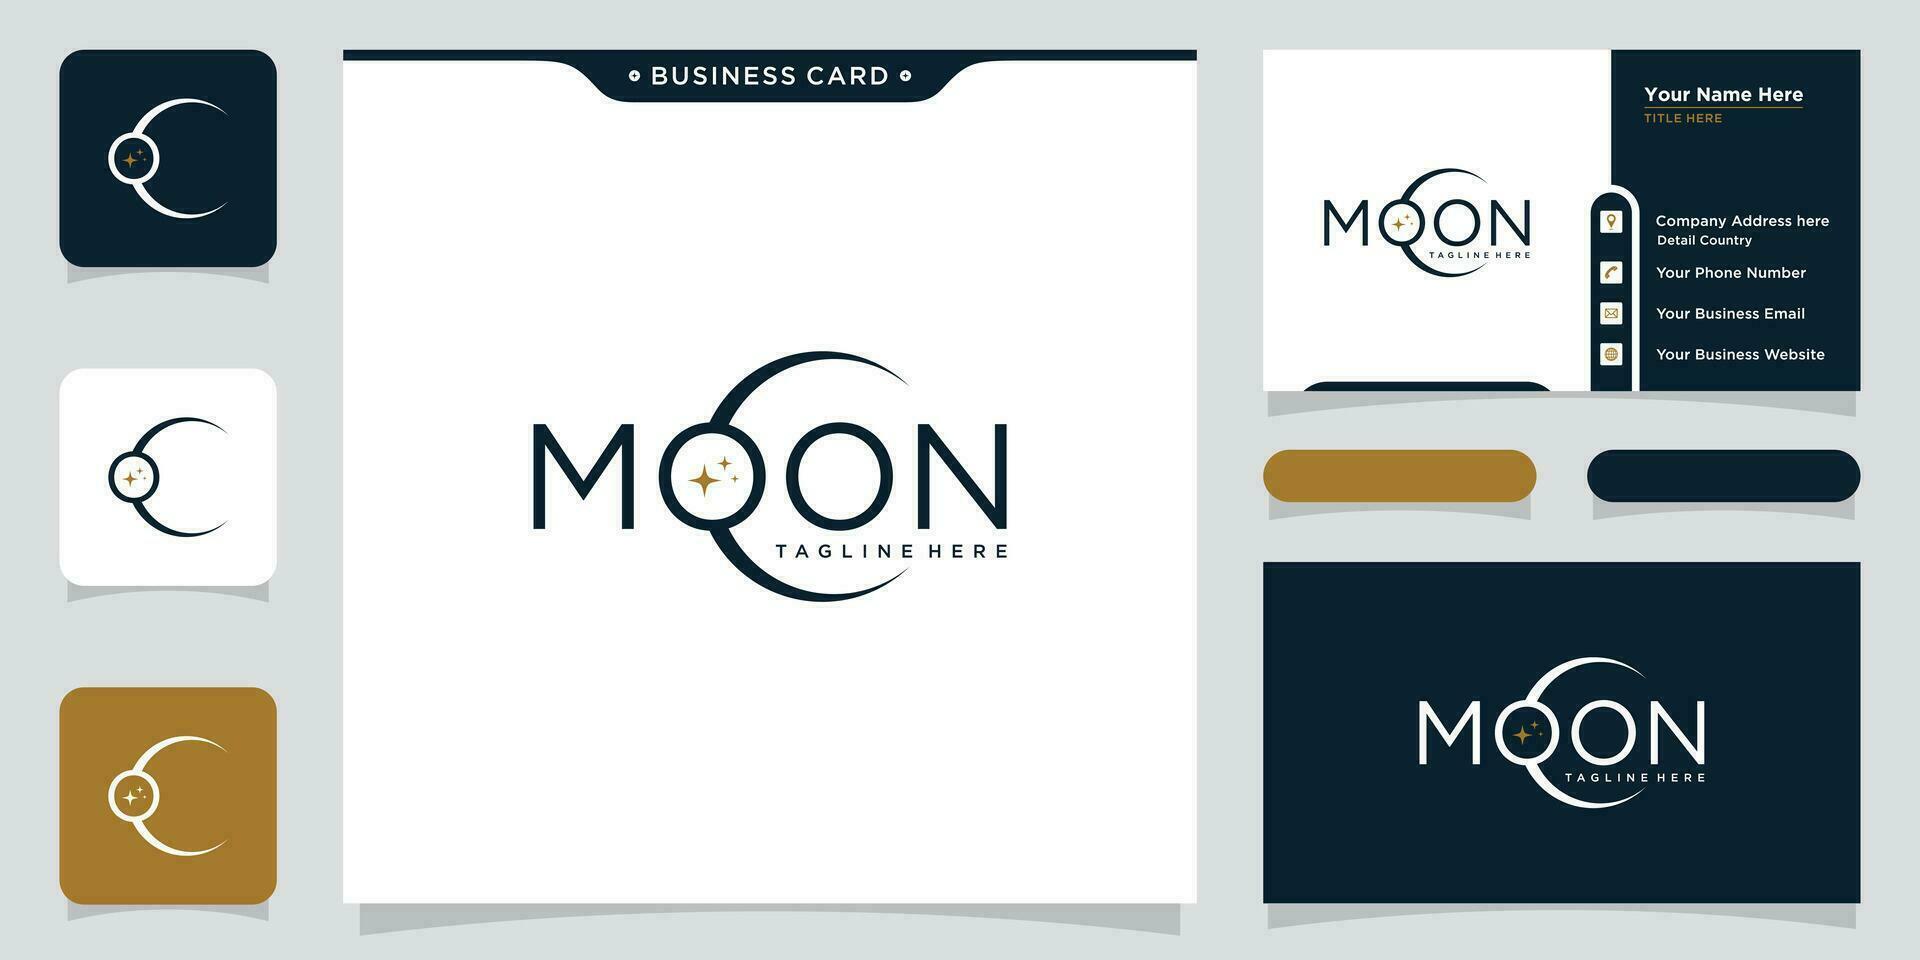 Moon logo modern and star logo design icon vector